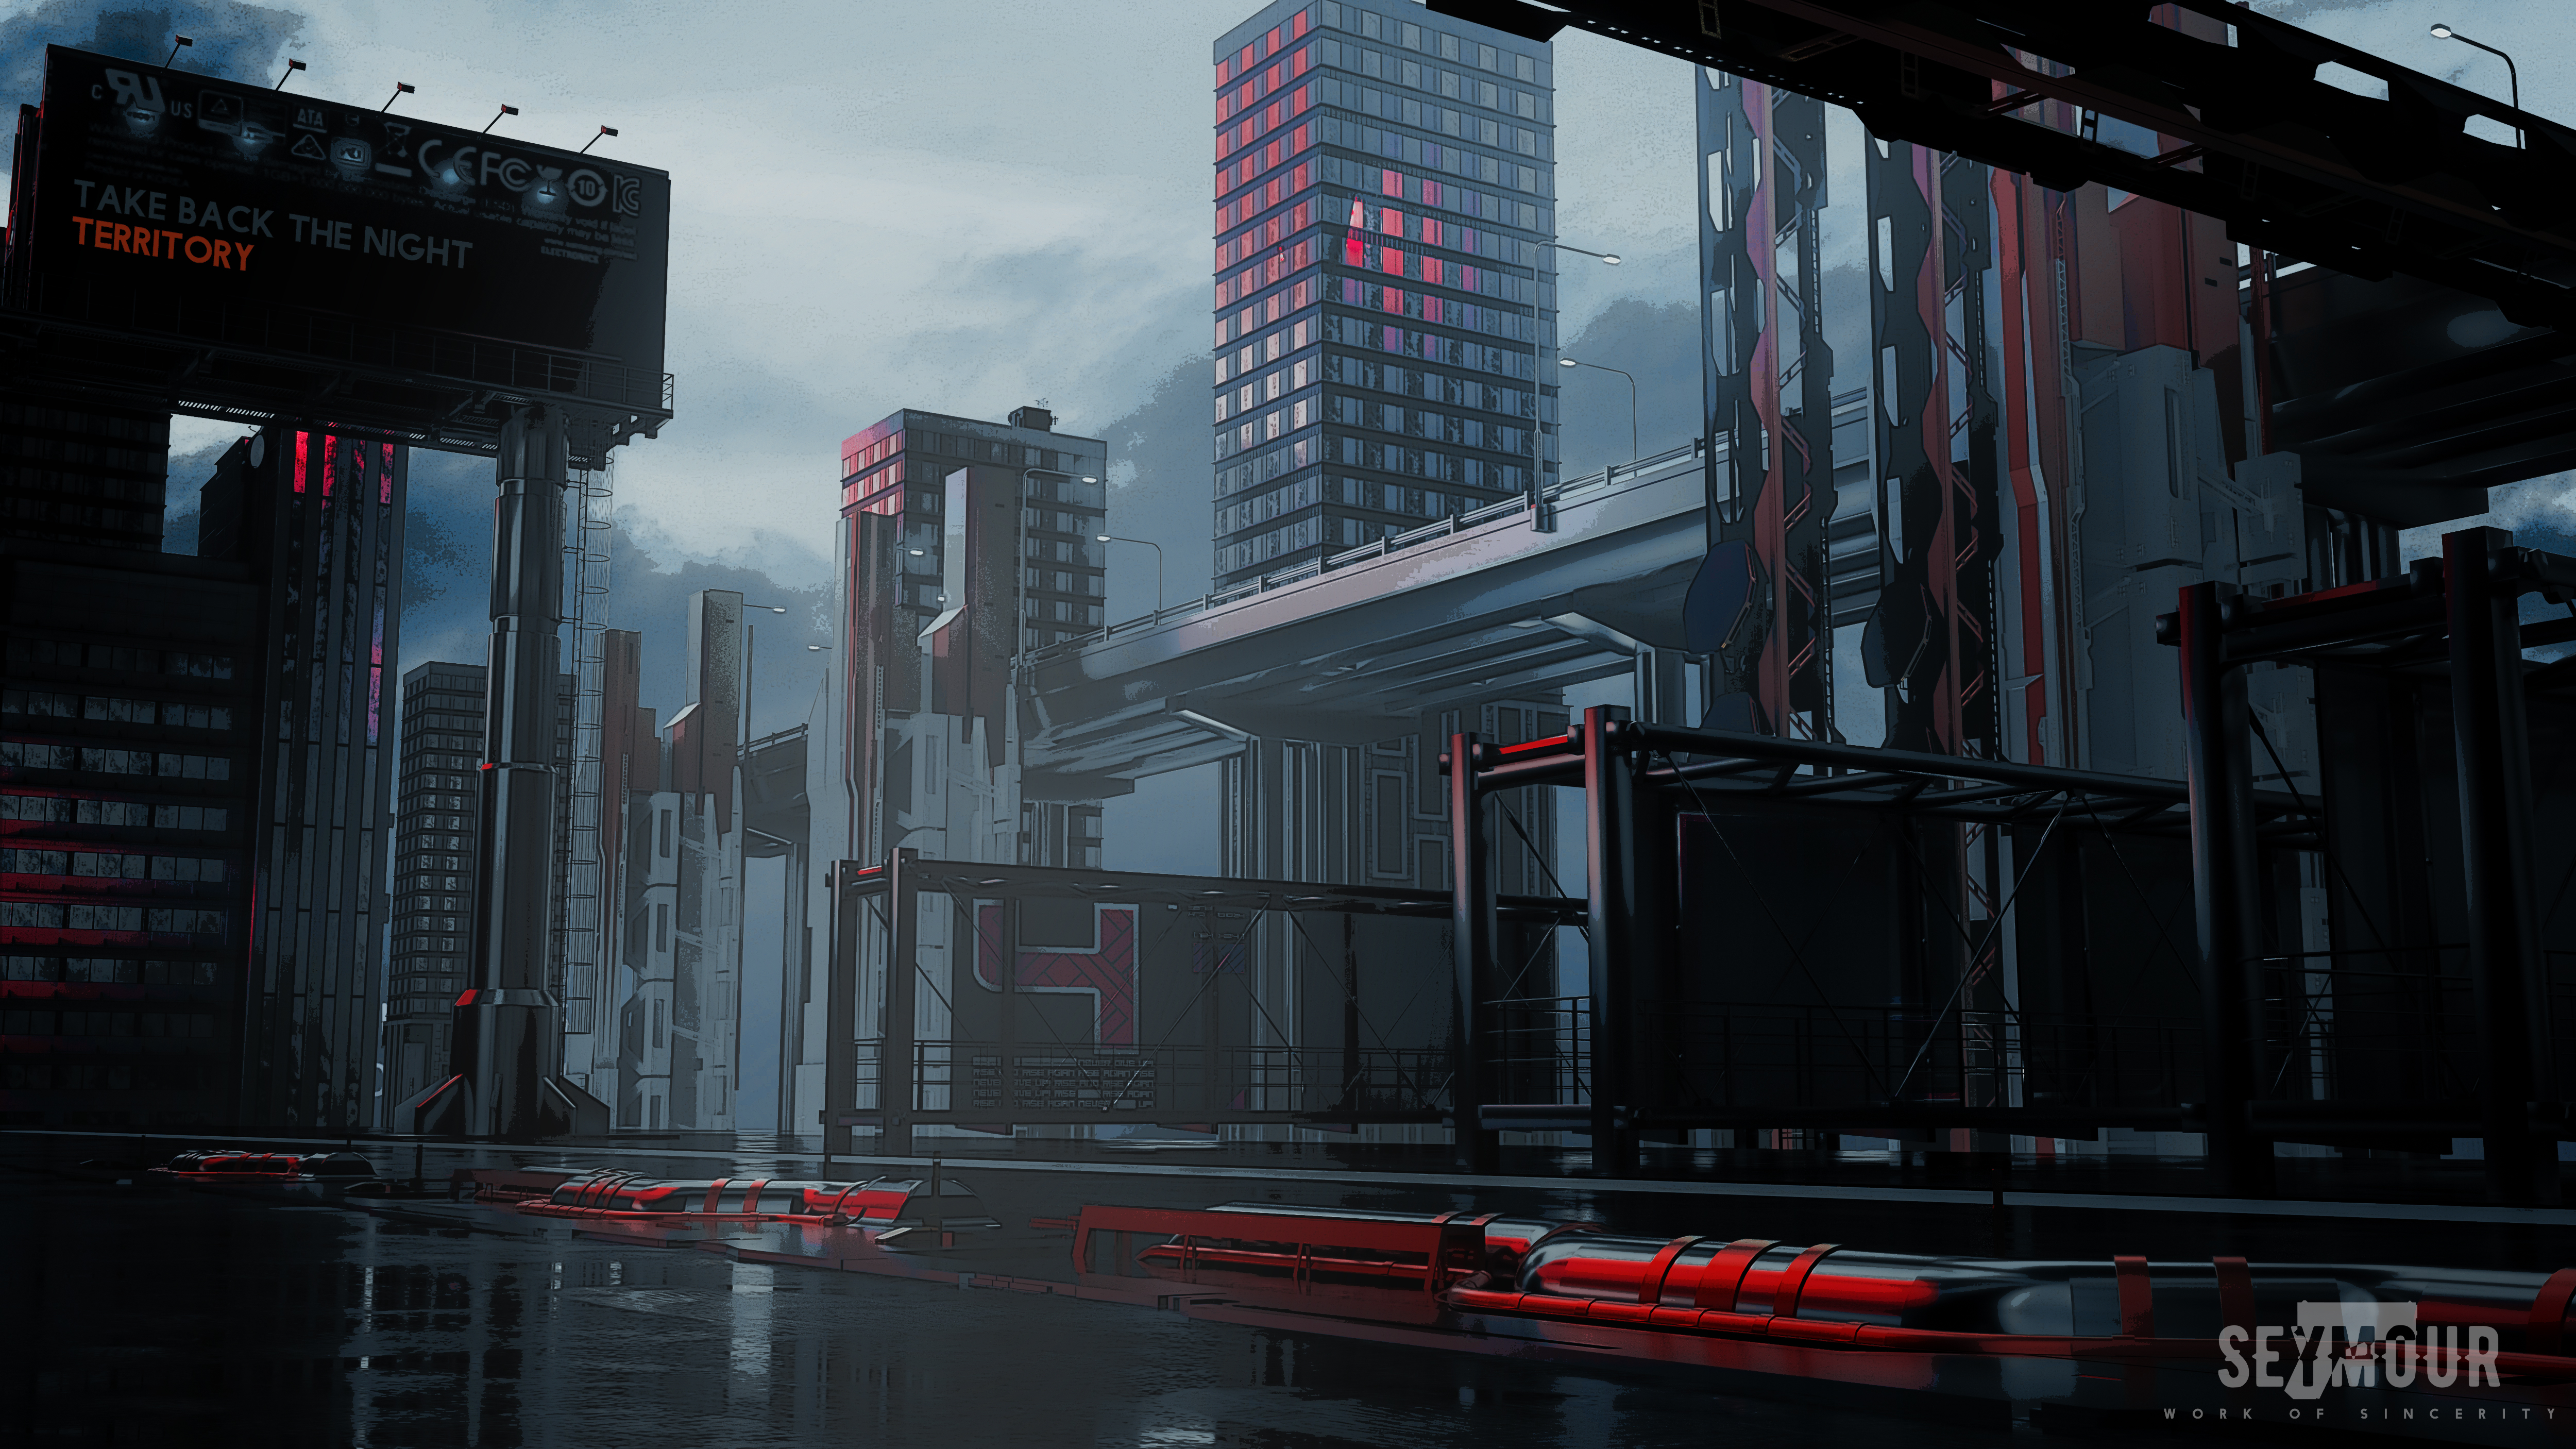 General 5000x2812 Seymour science fiction Pixiv cityscape futuristic city artwork futuristic